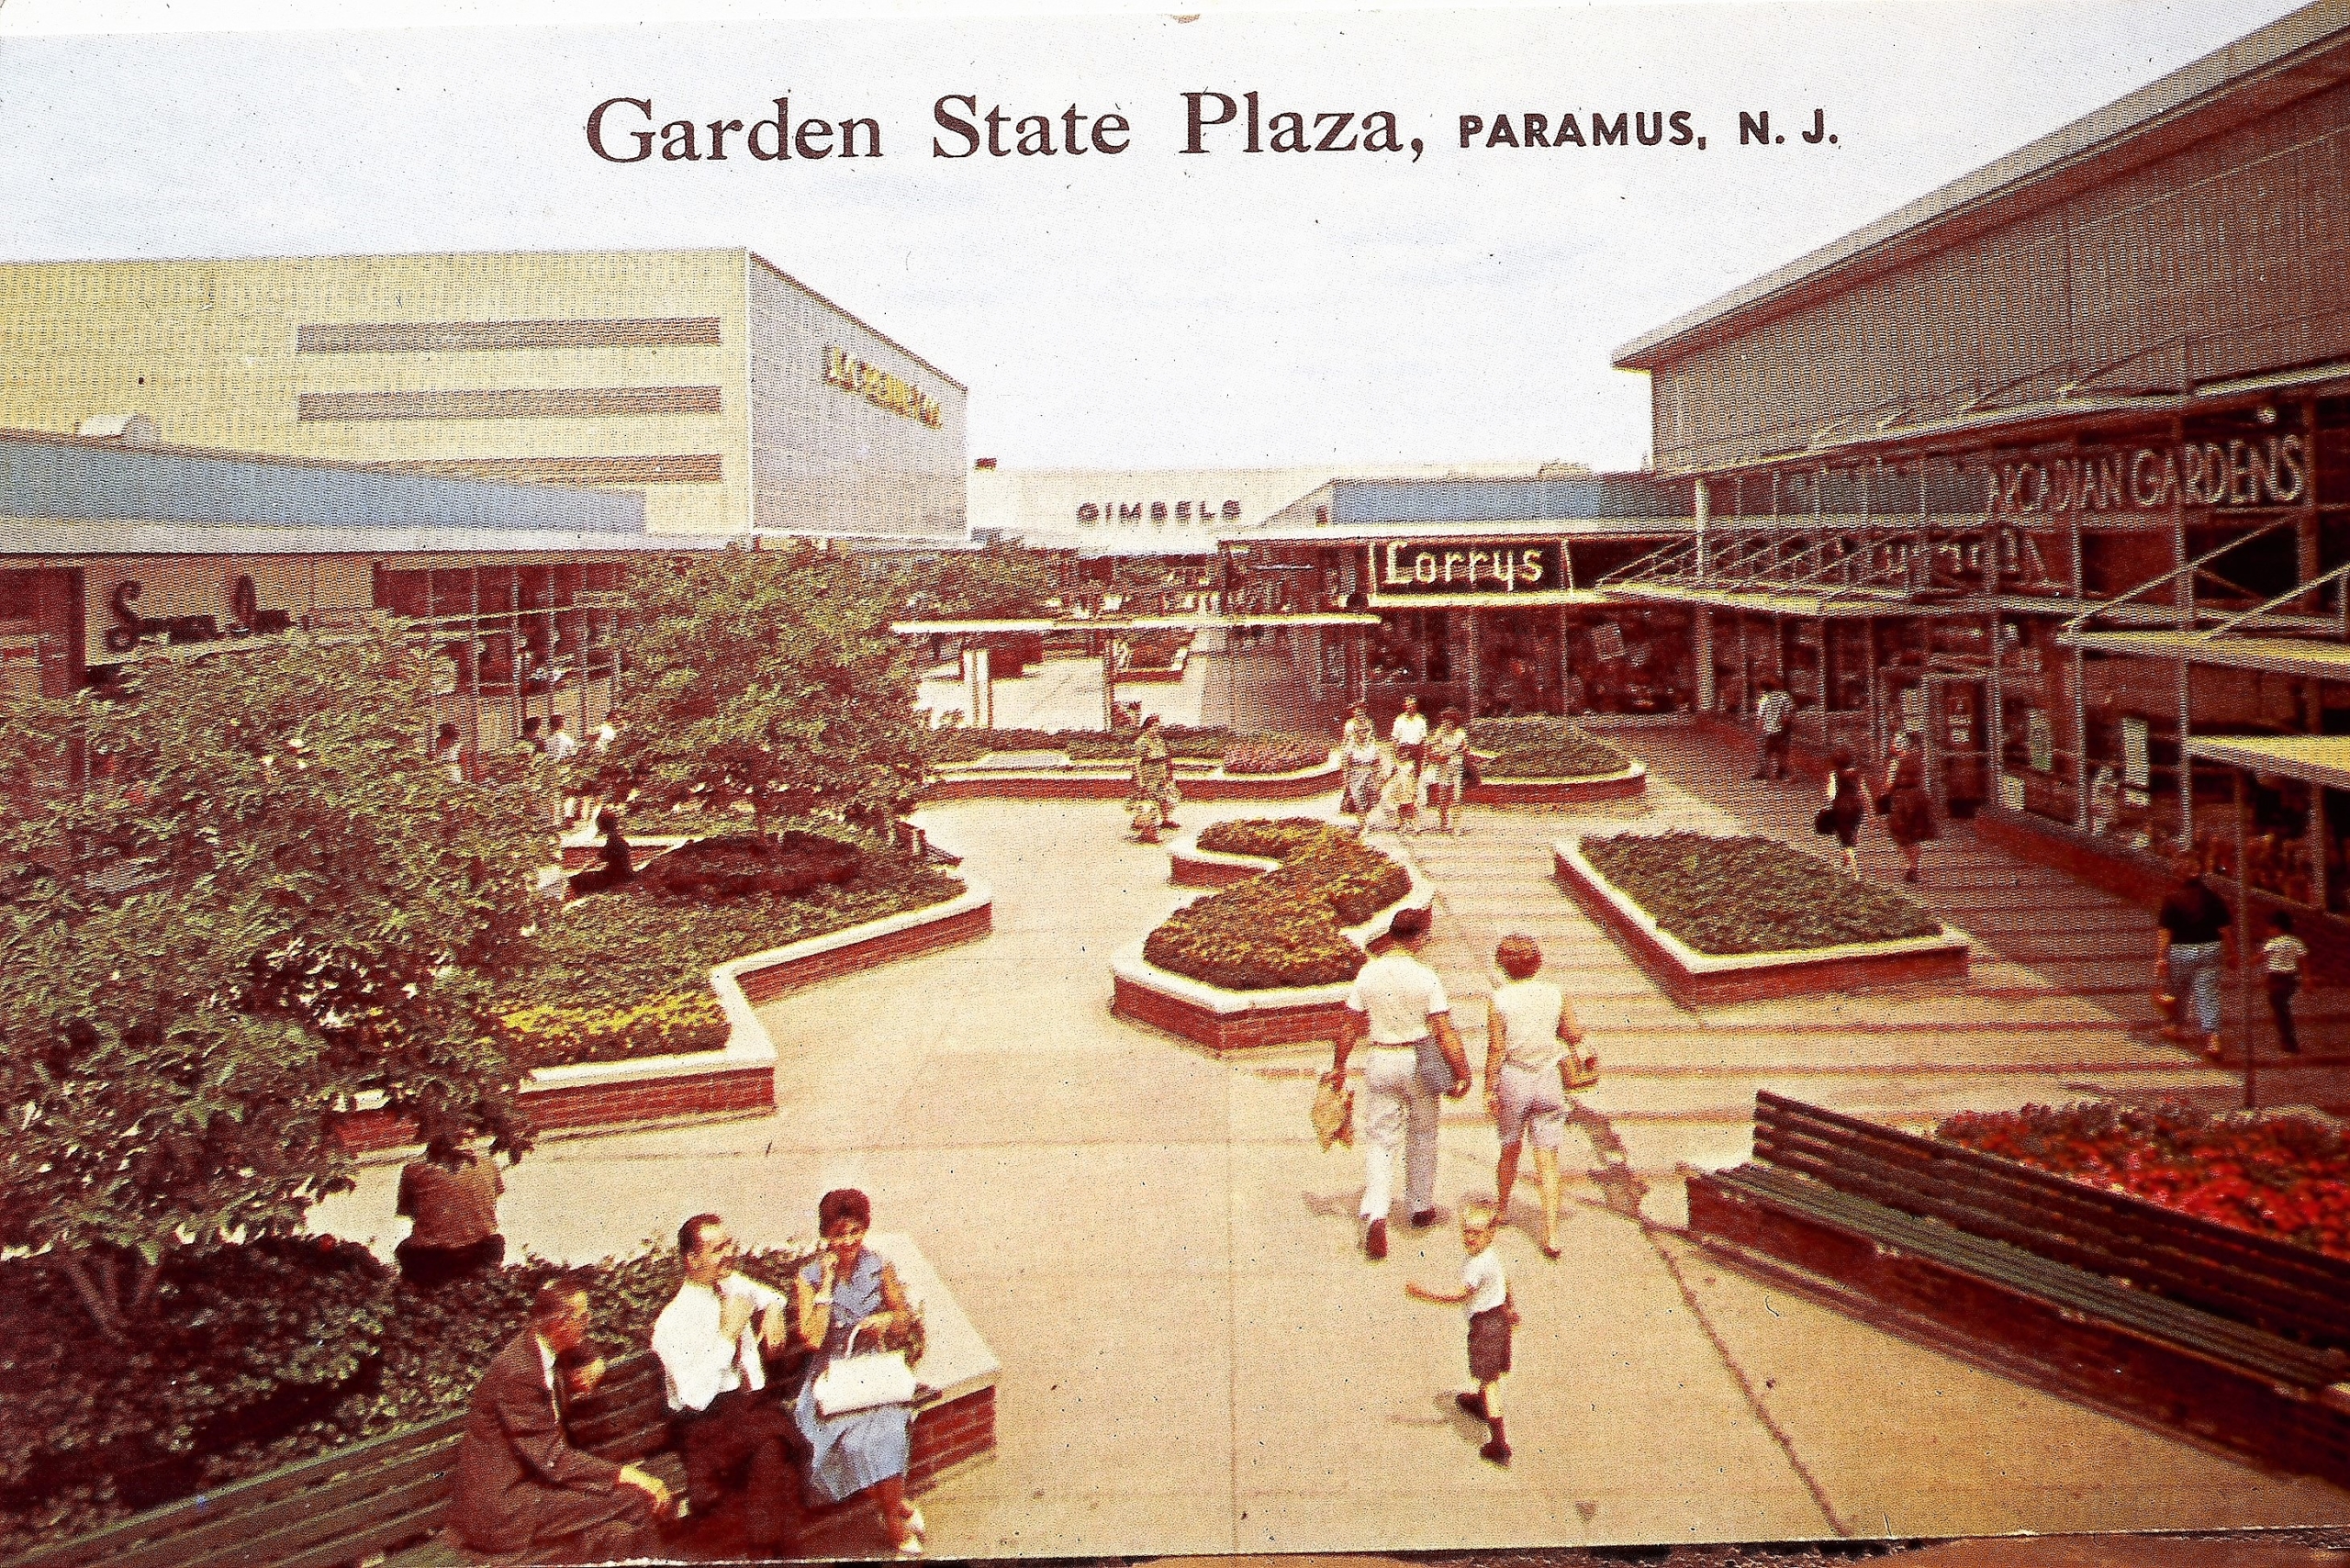 Gallery: Vintage photos of Garden State Plaza in Paramus